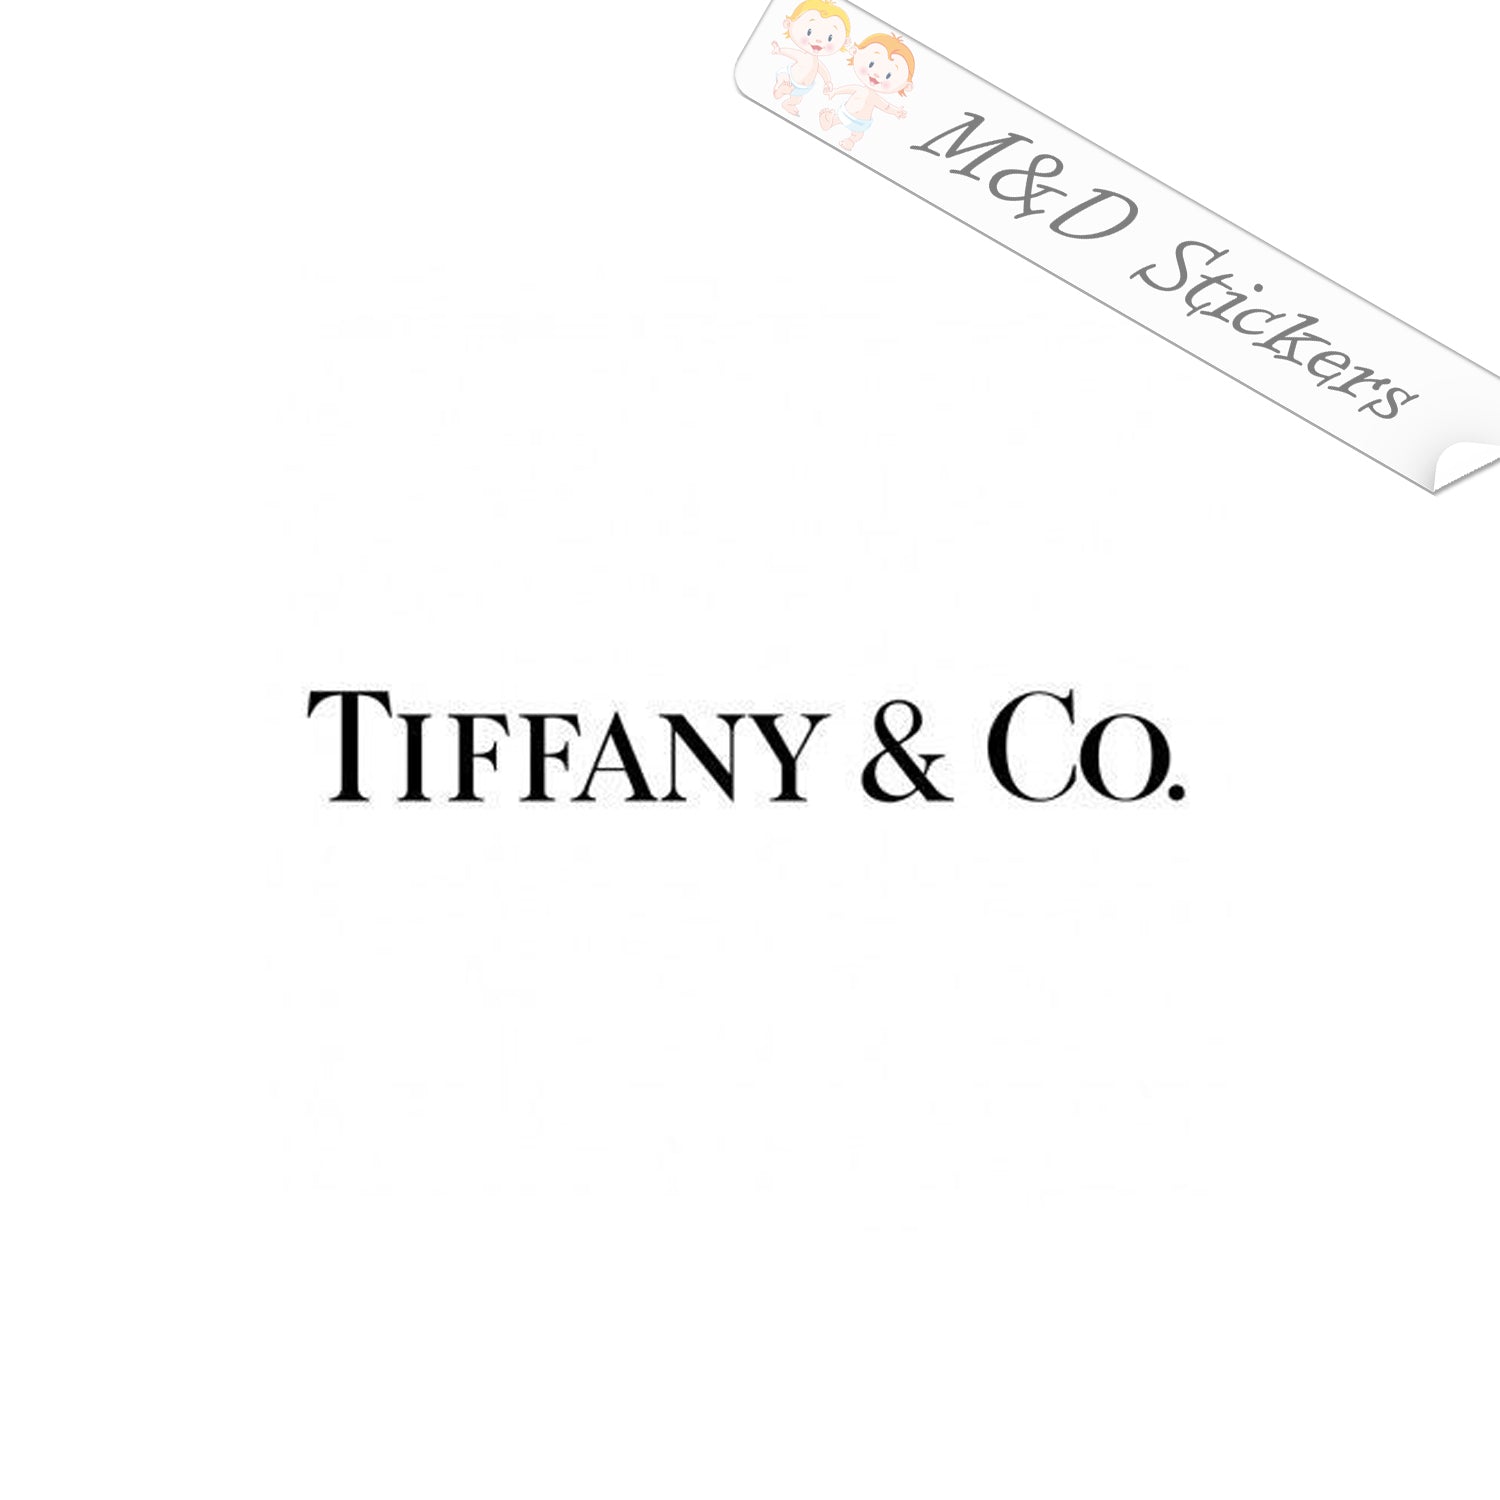 tiffany & co clothing